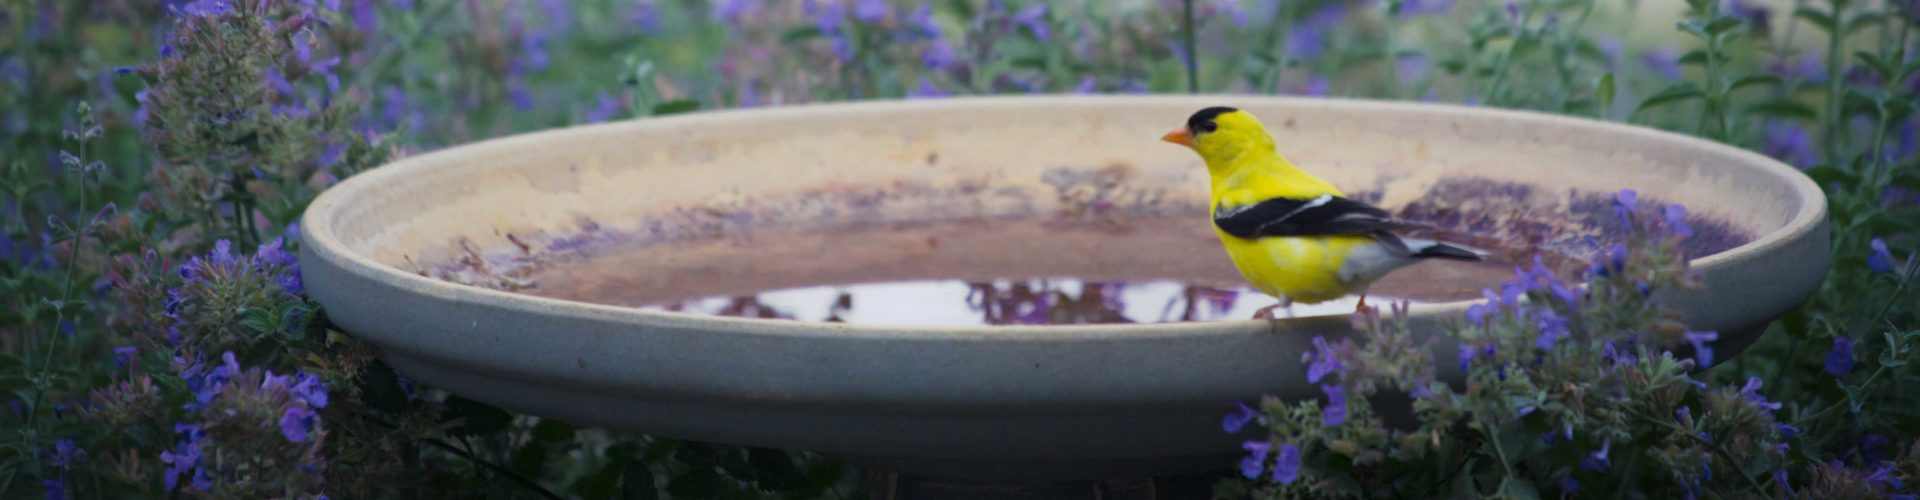 goldfinch on a bird bath